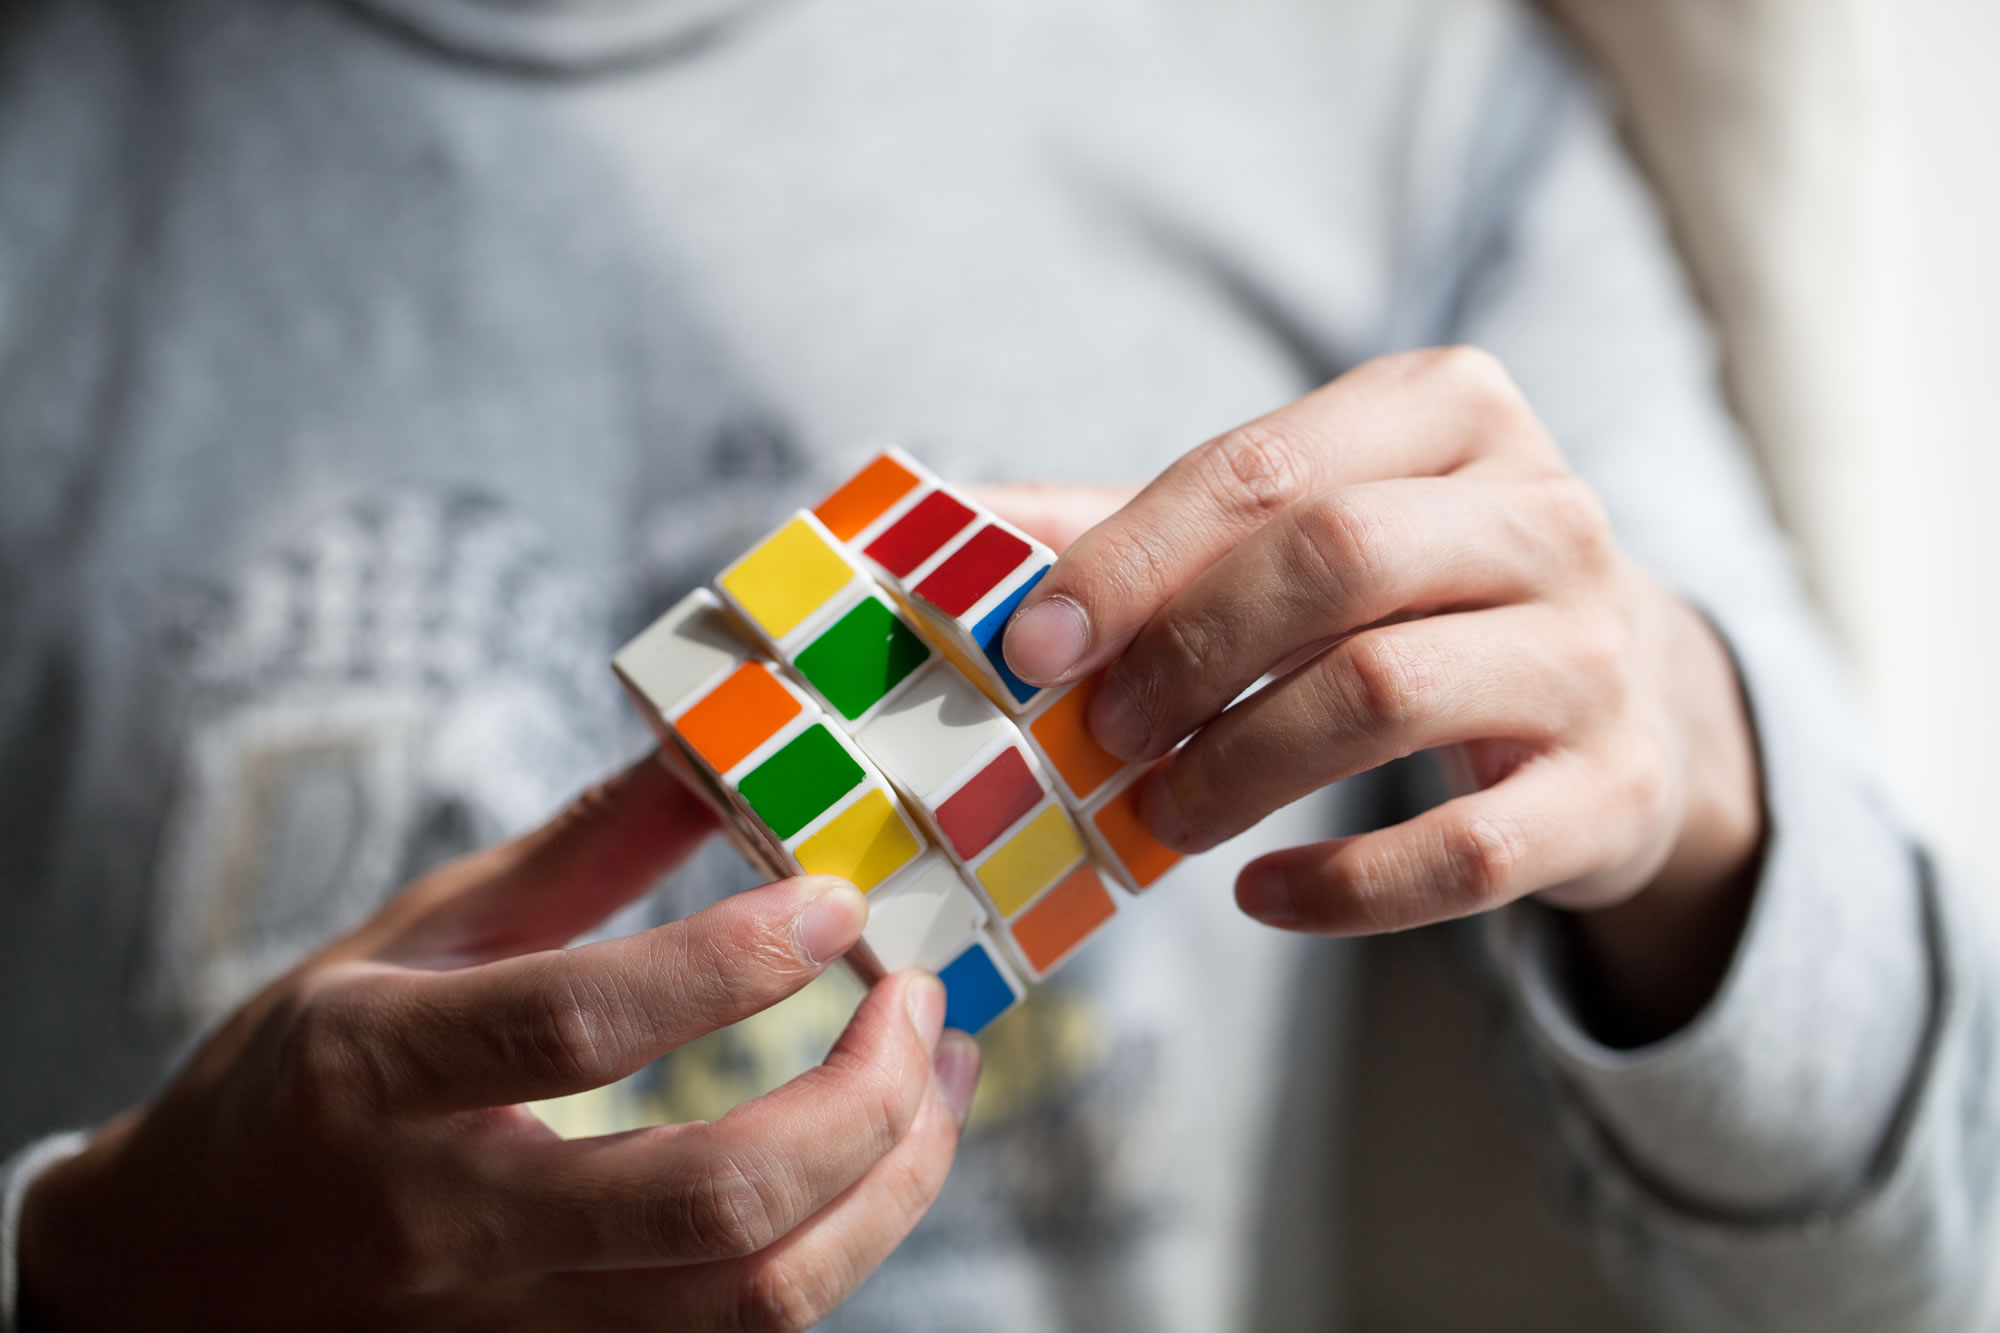 Solve a Rubik’s Cube